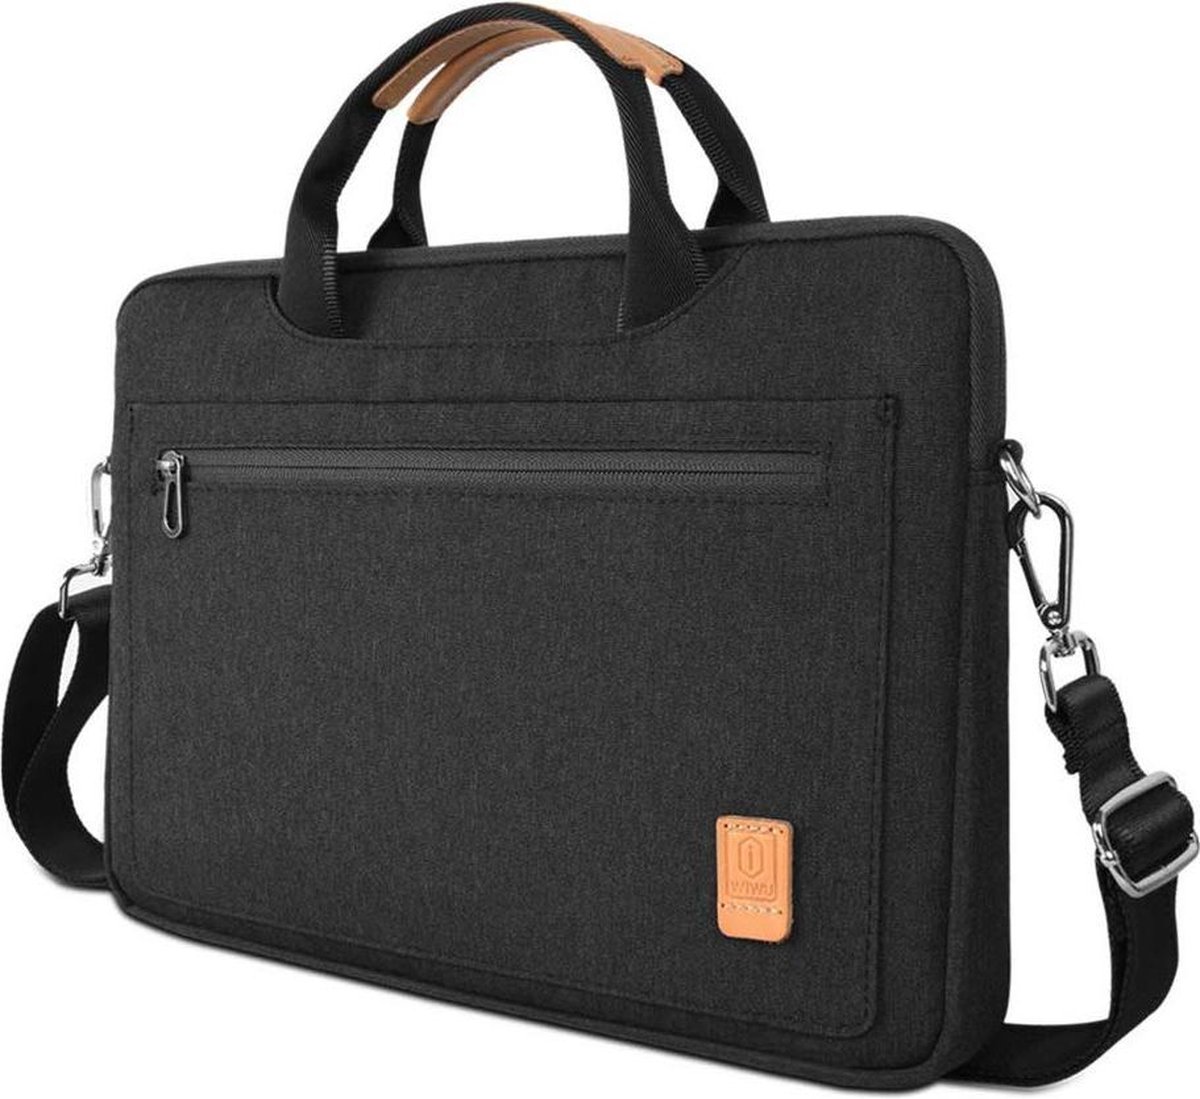 Laptoptas geschikt voor Acer Travelmate - 13.3 inch Pioneer Waterafstotende laptoptas met schouderband - Zwart